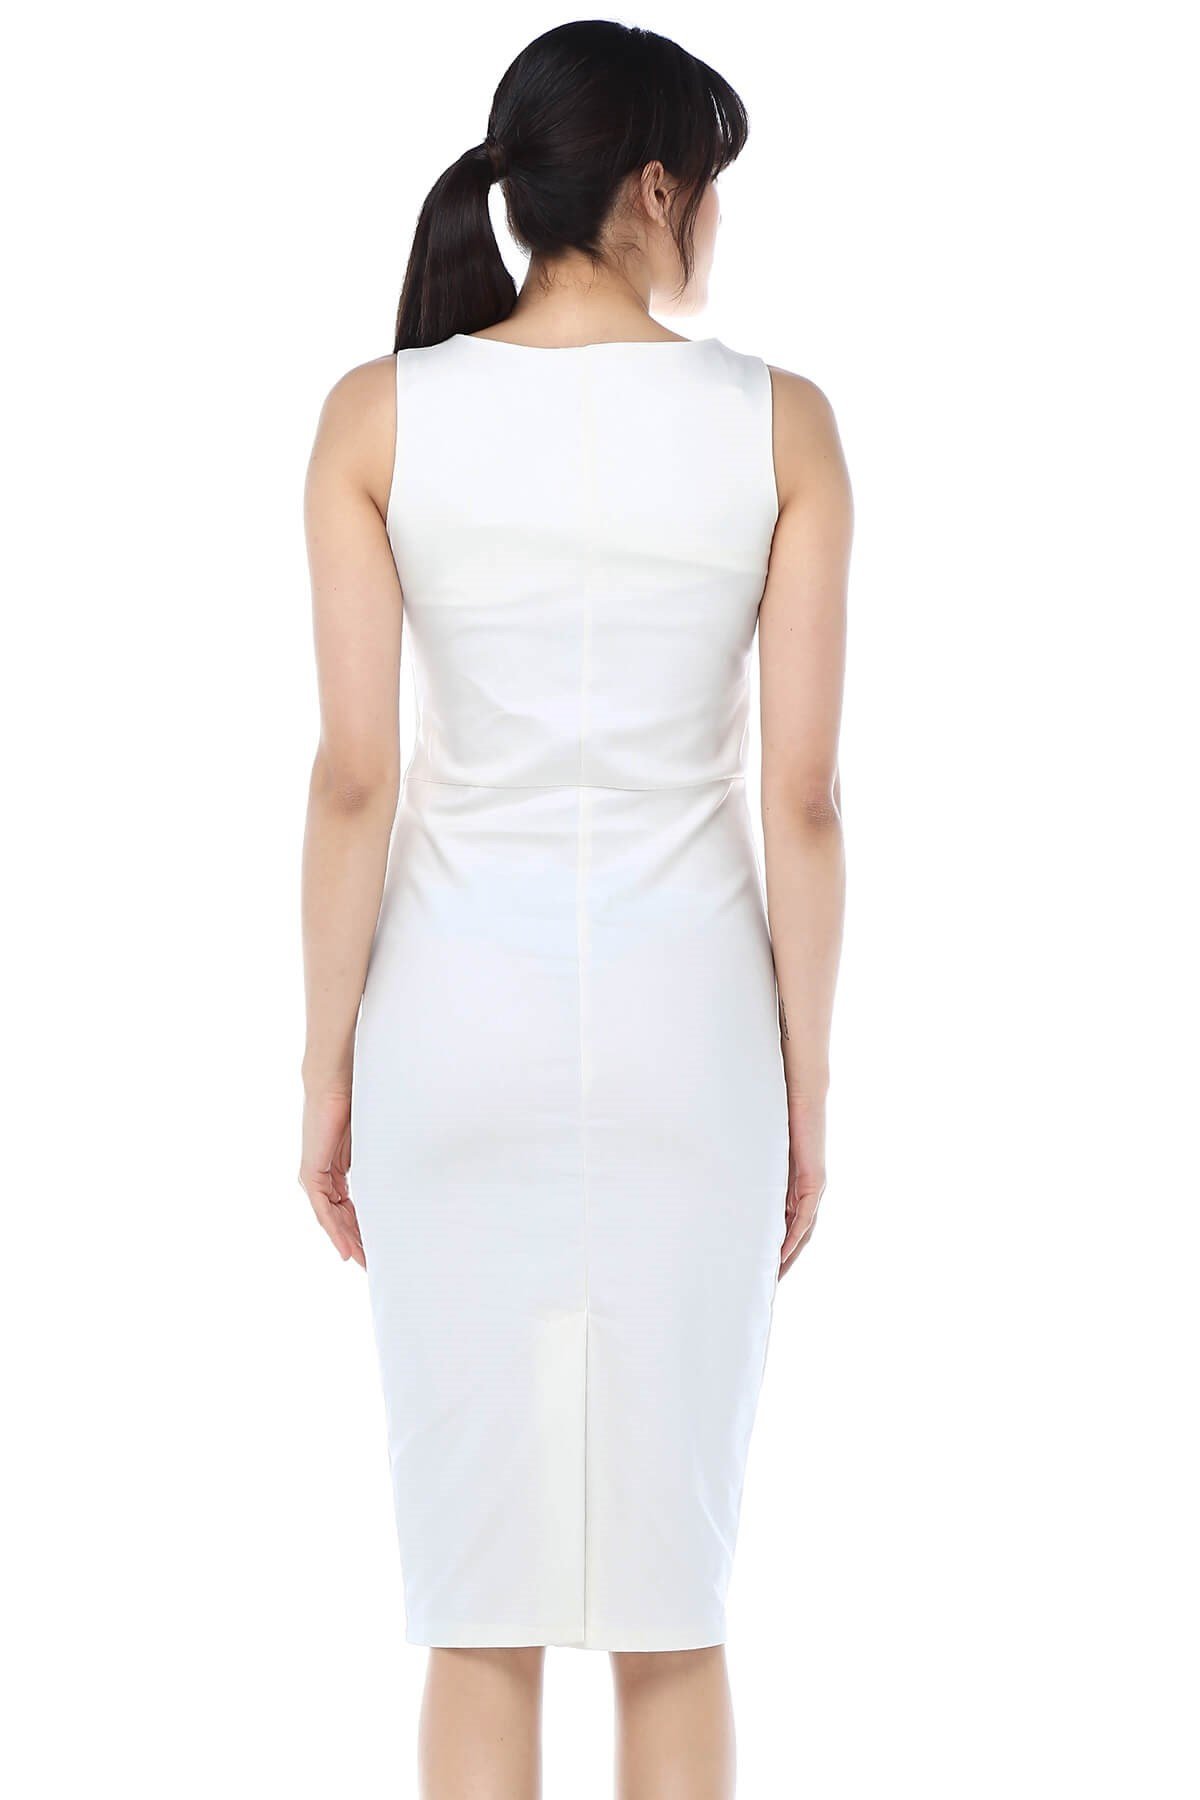 Moda Labio | Jile Beyaz Elbise